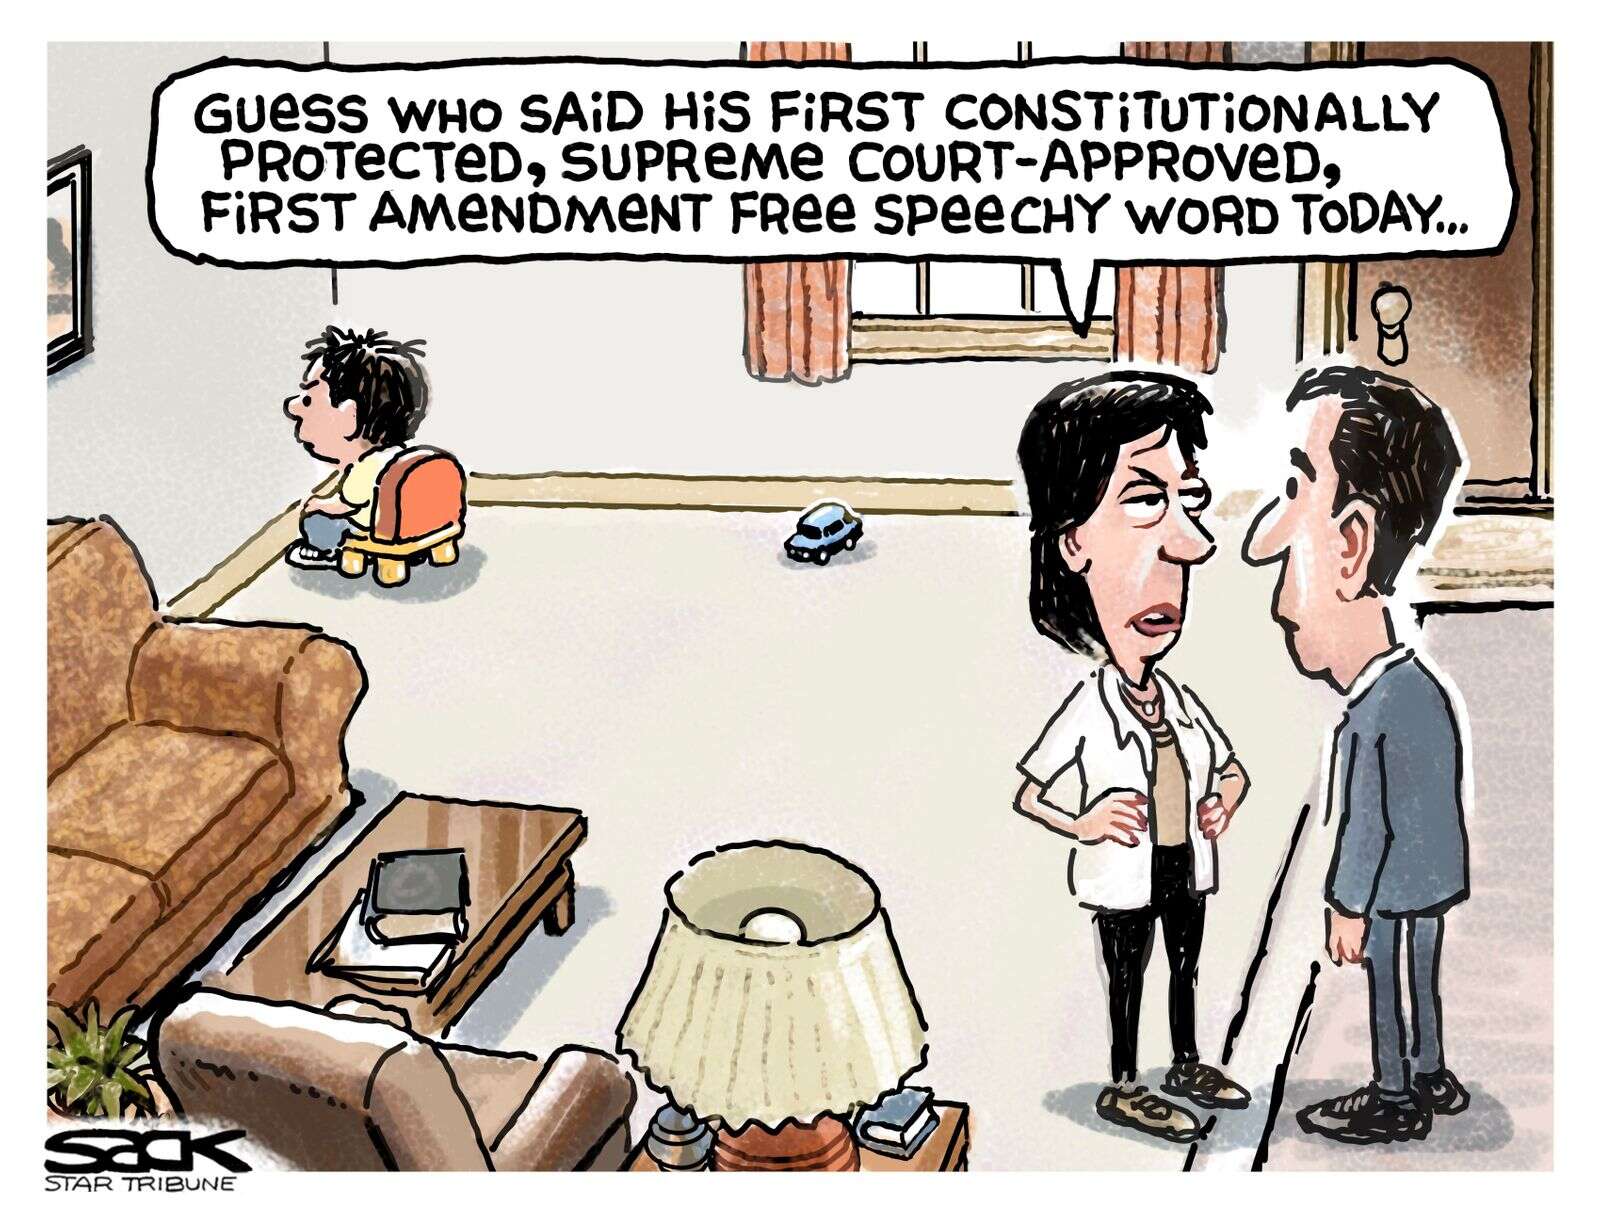 26th amendment political cartoons